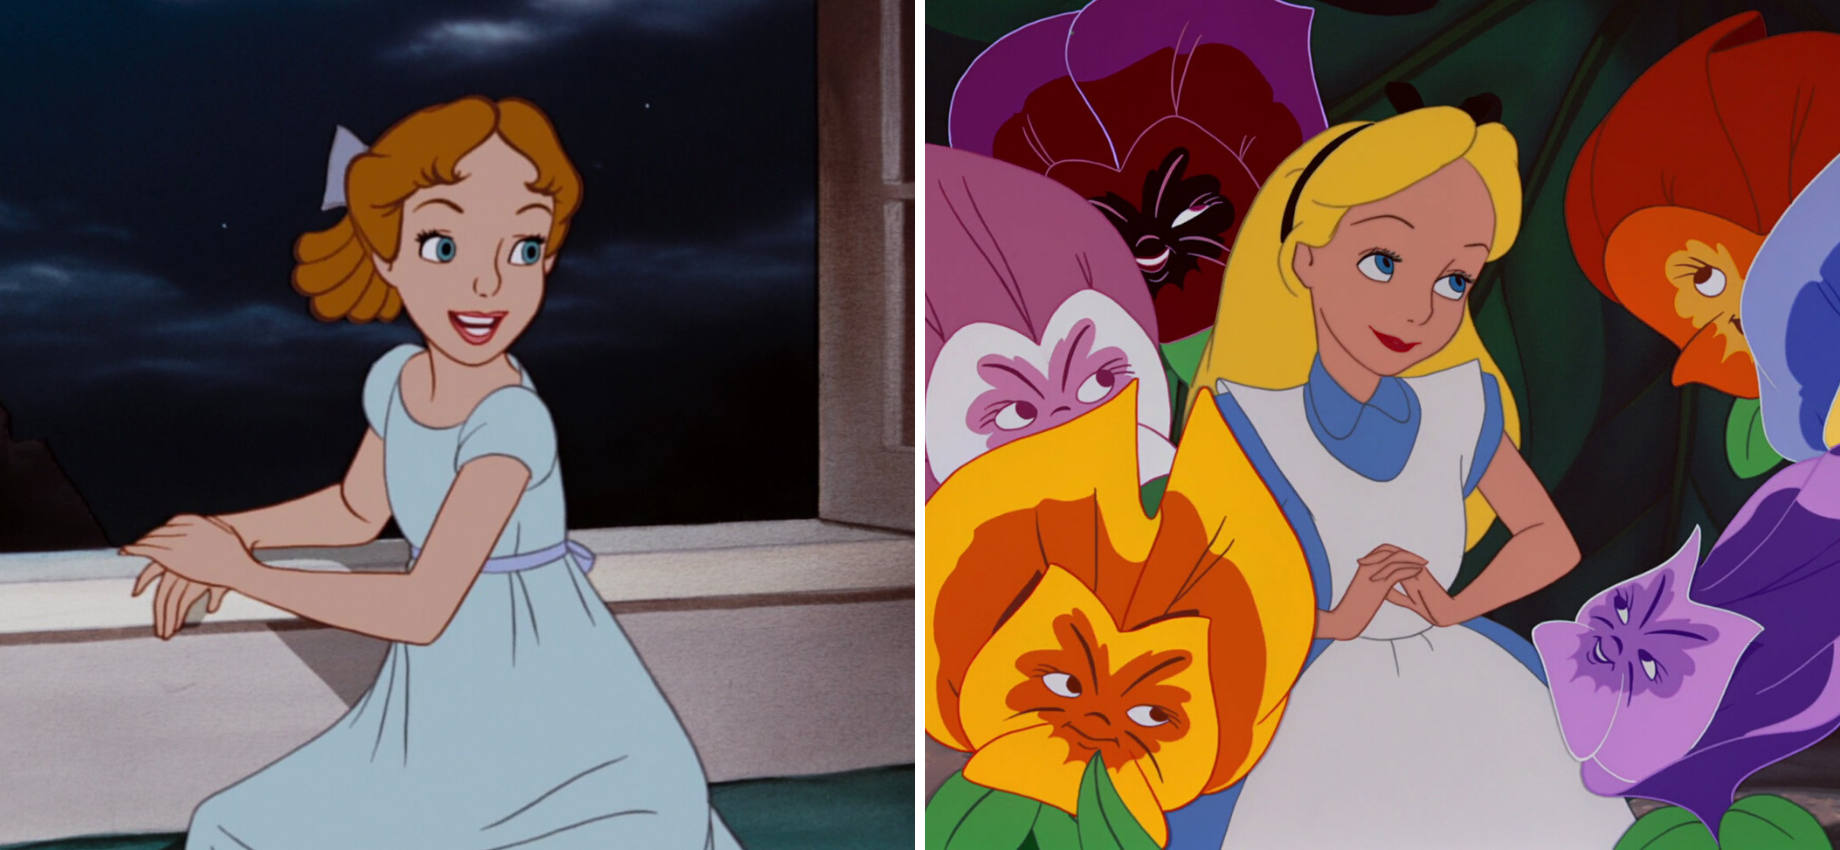 "Selfish" Female Disney Characters: Alice in Wonderland vs. Wendy Darling